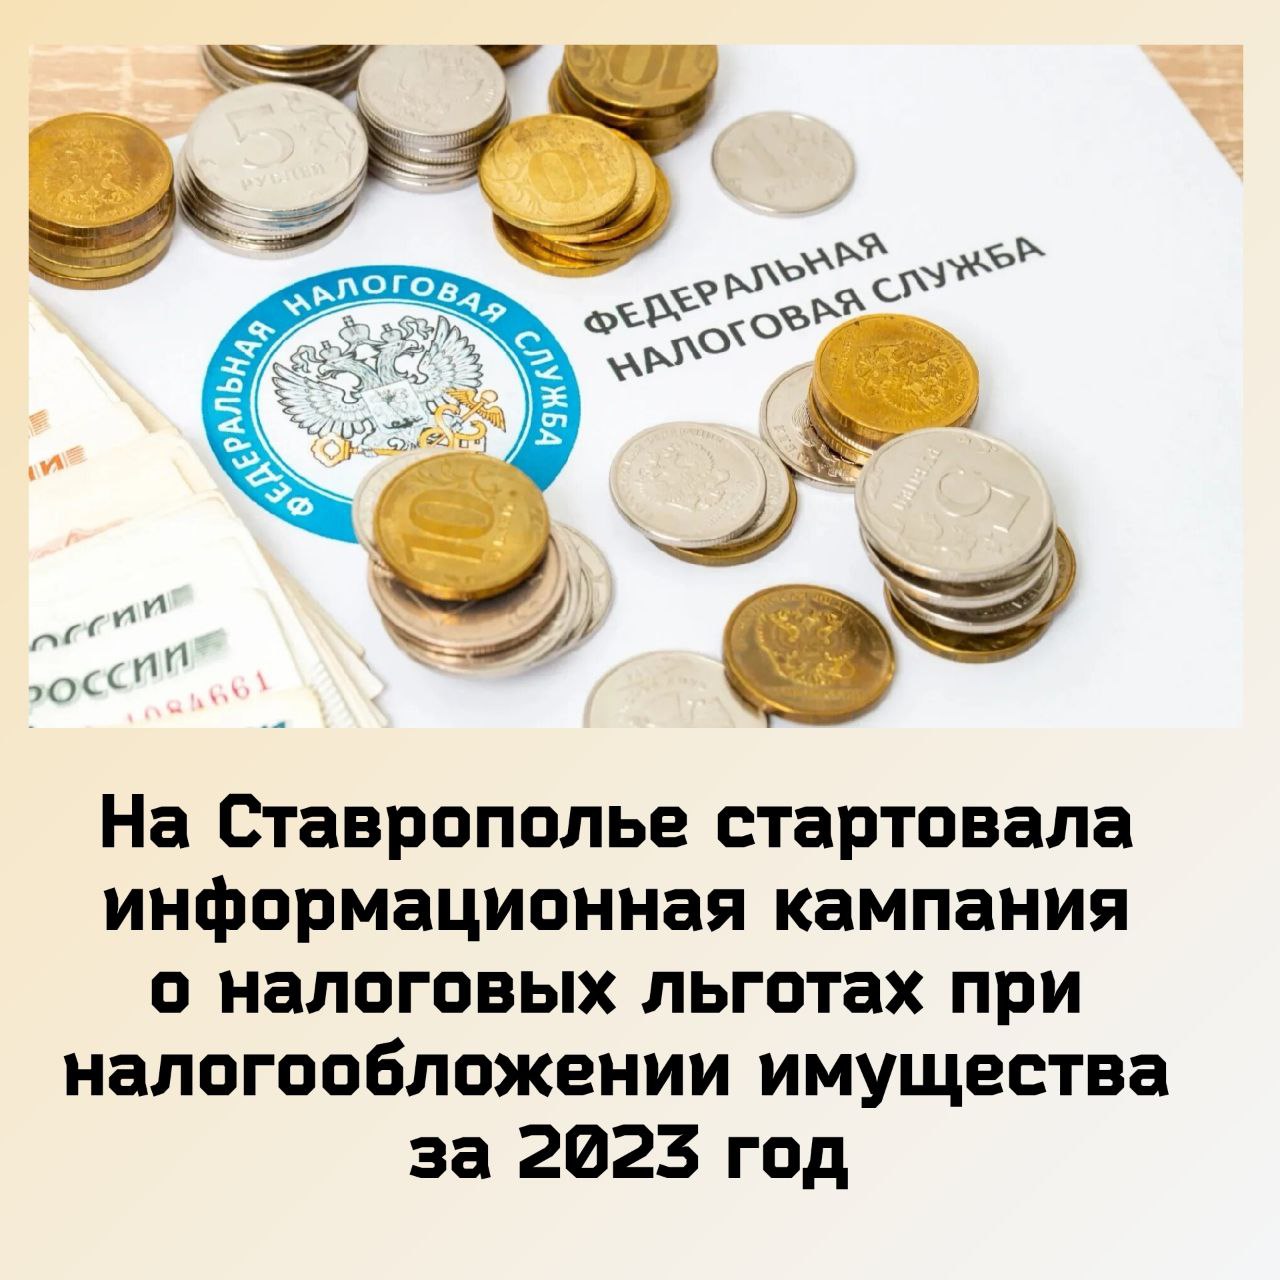 УФНС России по Ставропольскому краю проводит публичную информационную кампанию по информированию о налоговых льготах при налогообложении имущества.